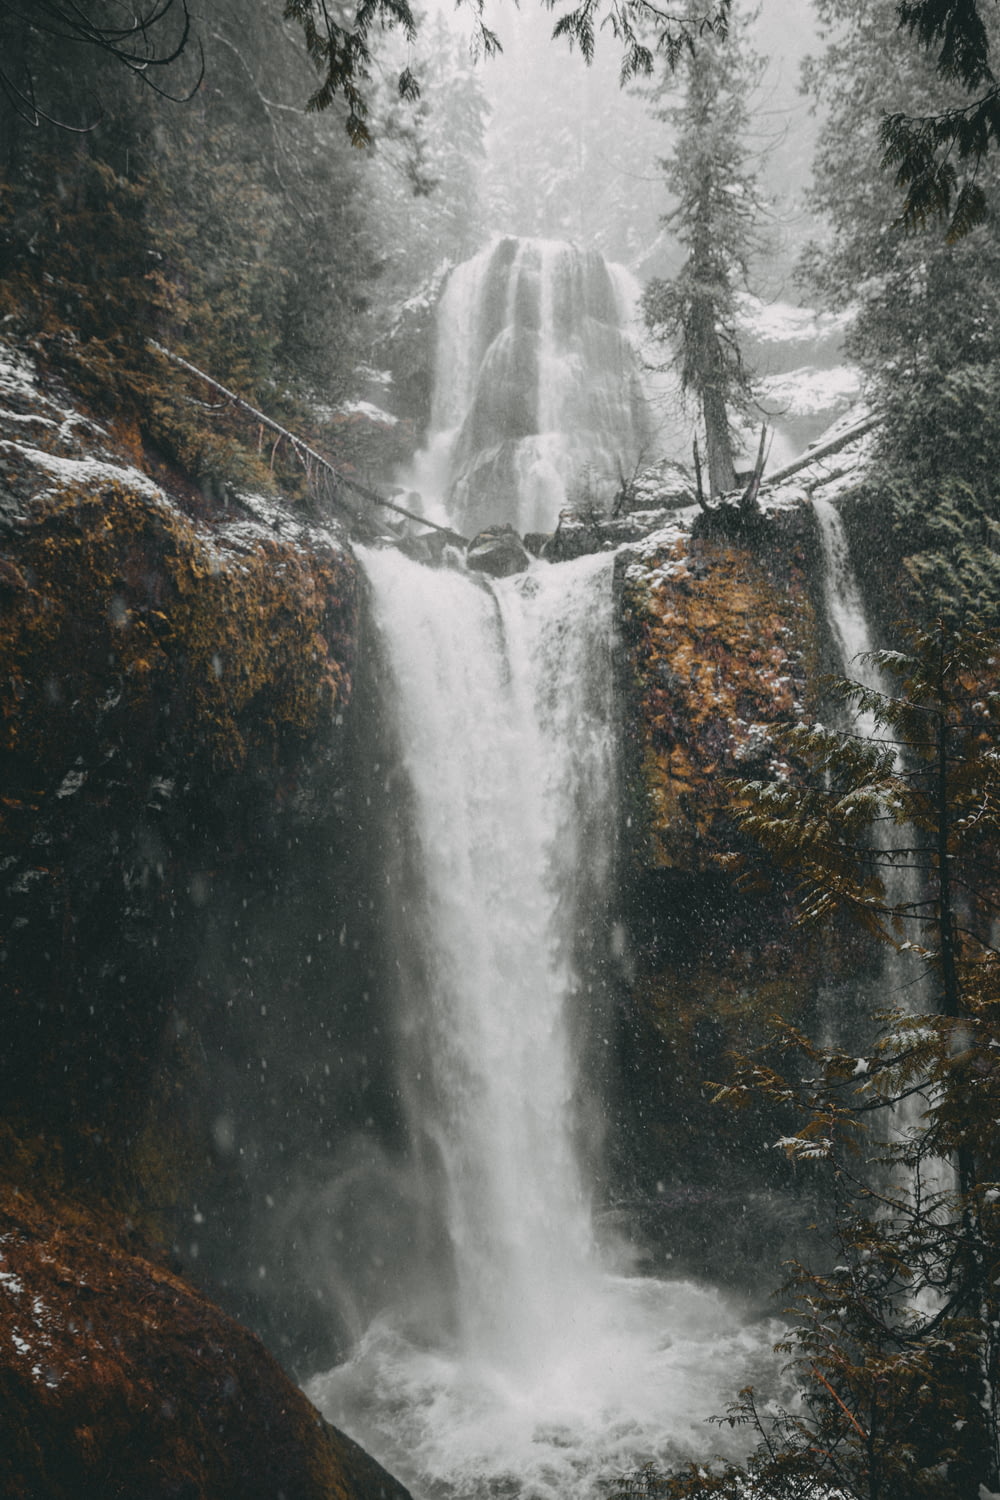 flowing waterfalls during daytime